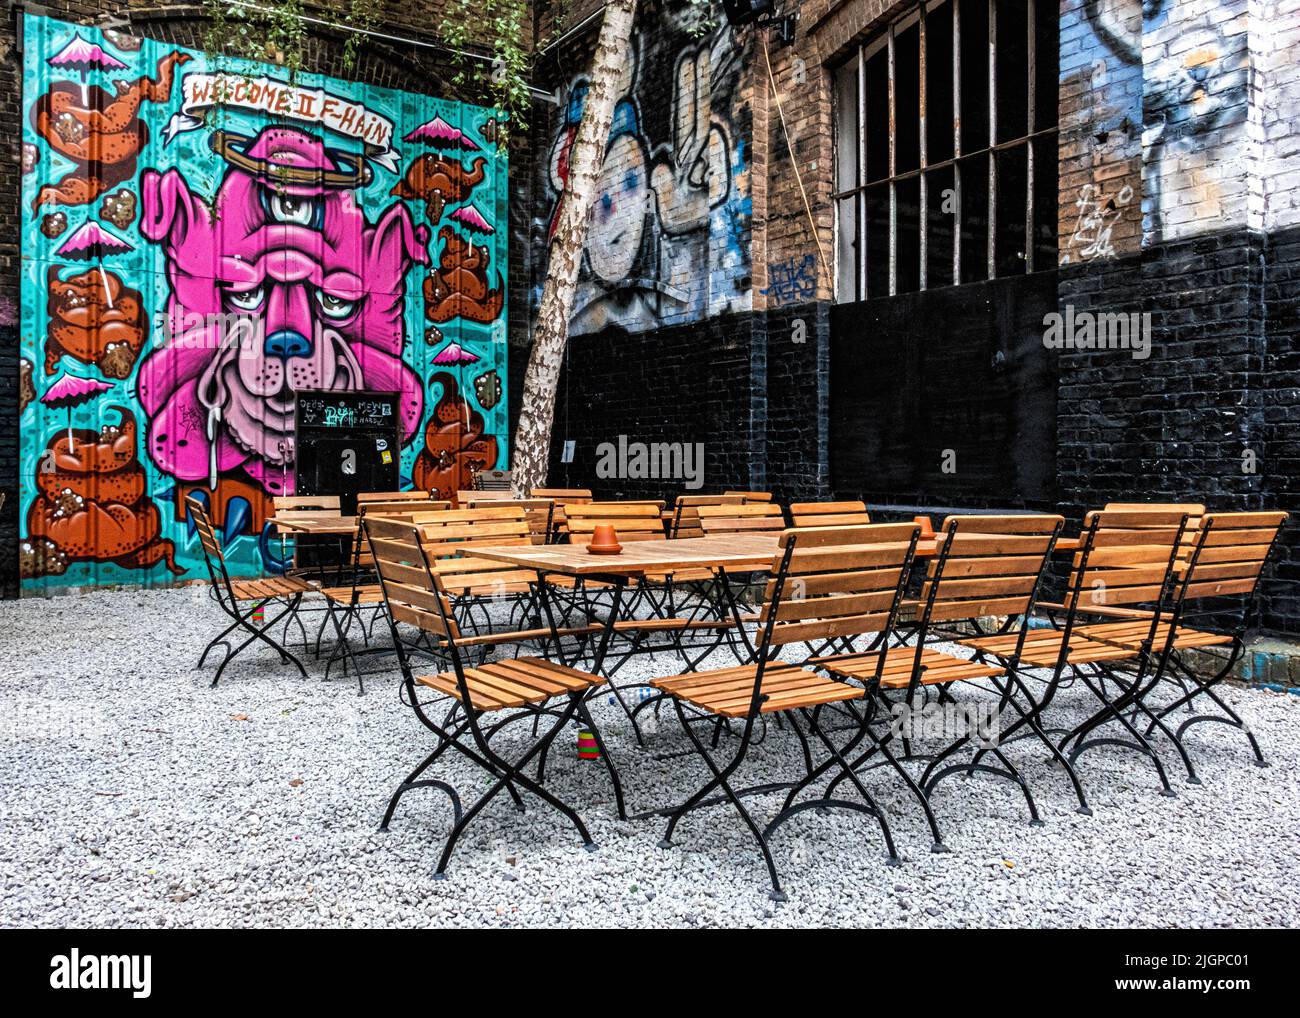 Berlín, Friedrichshain, RAW Gelände. - patio y bar al aire libre fuera de edificios industriales antiguos. Foto de stock